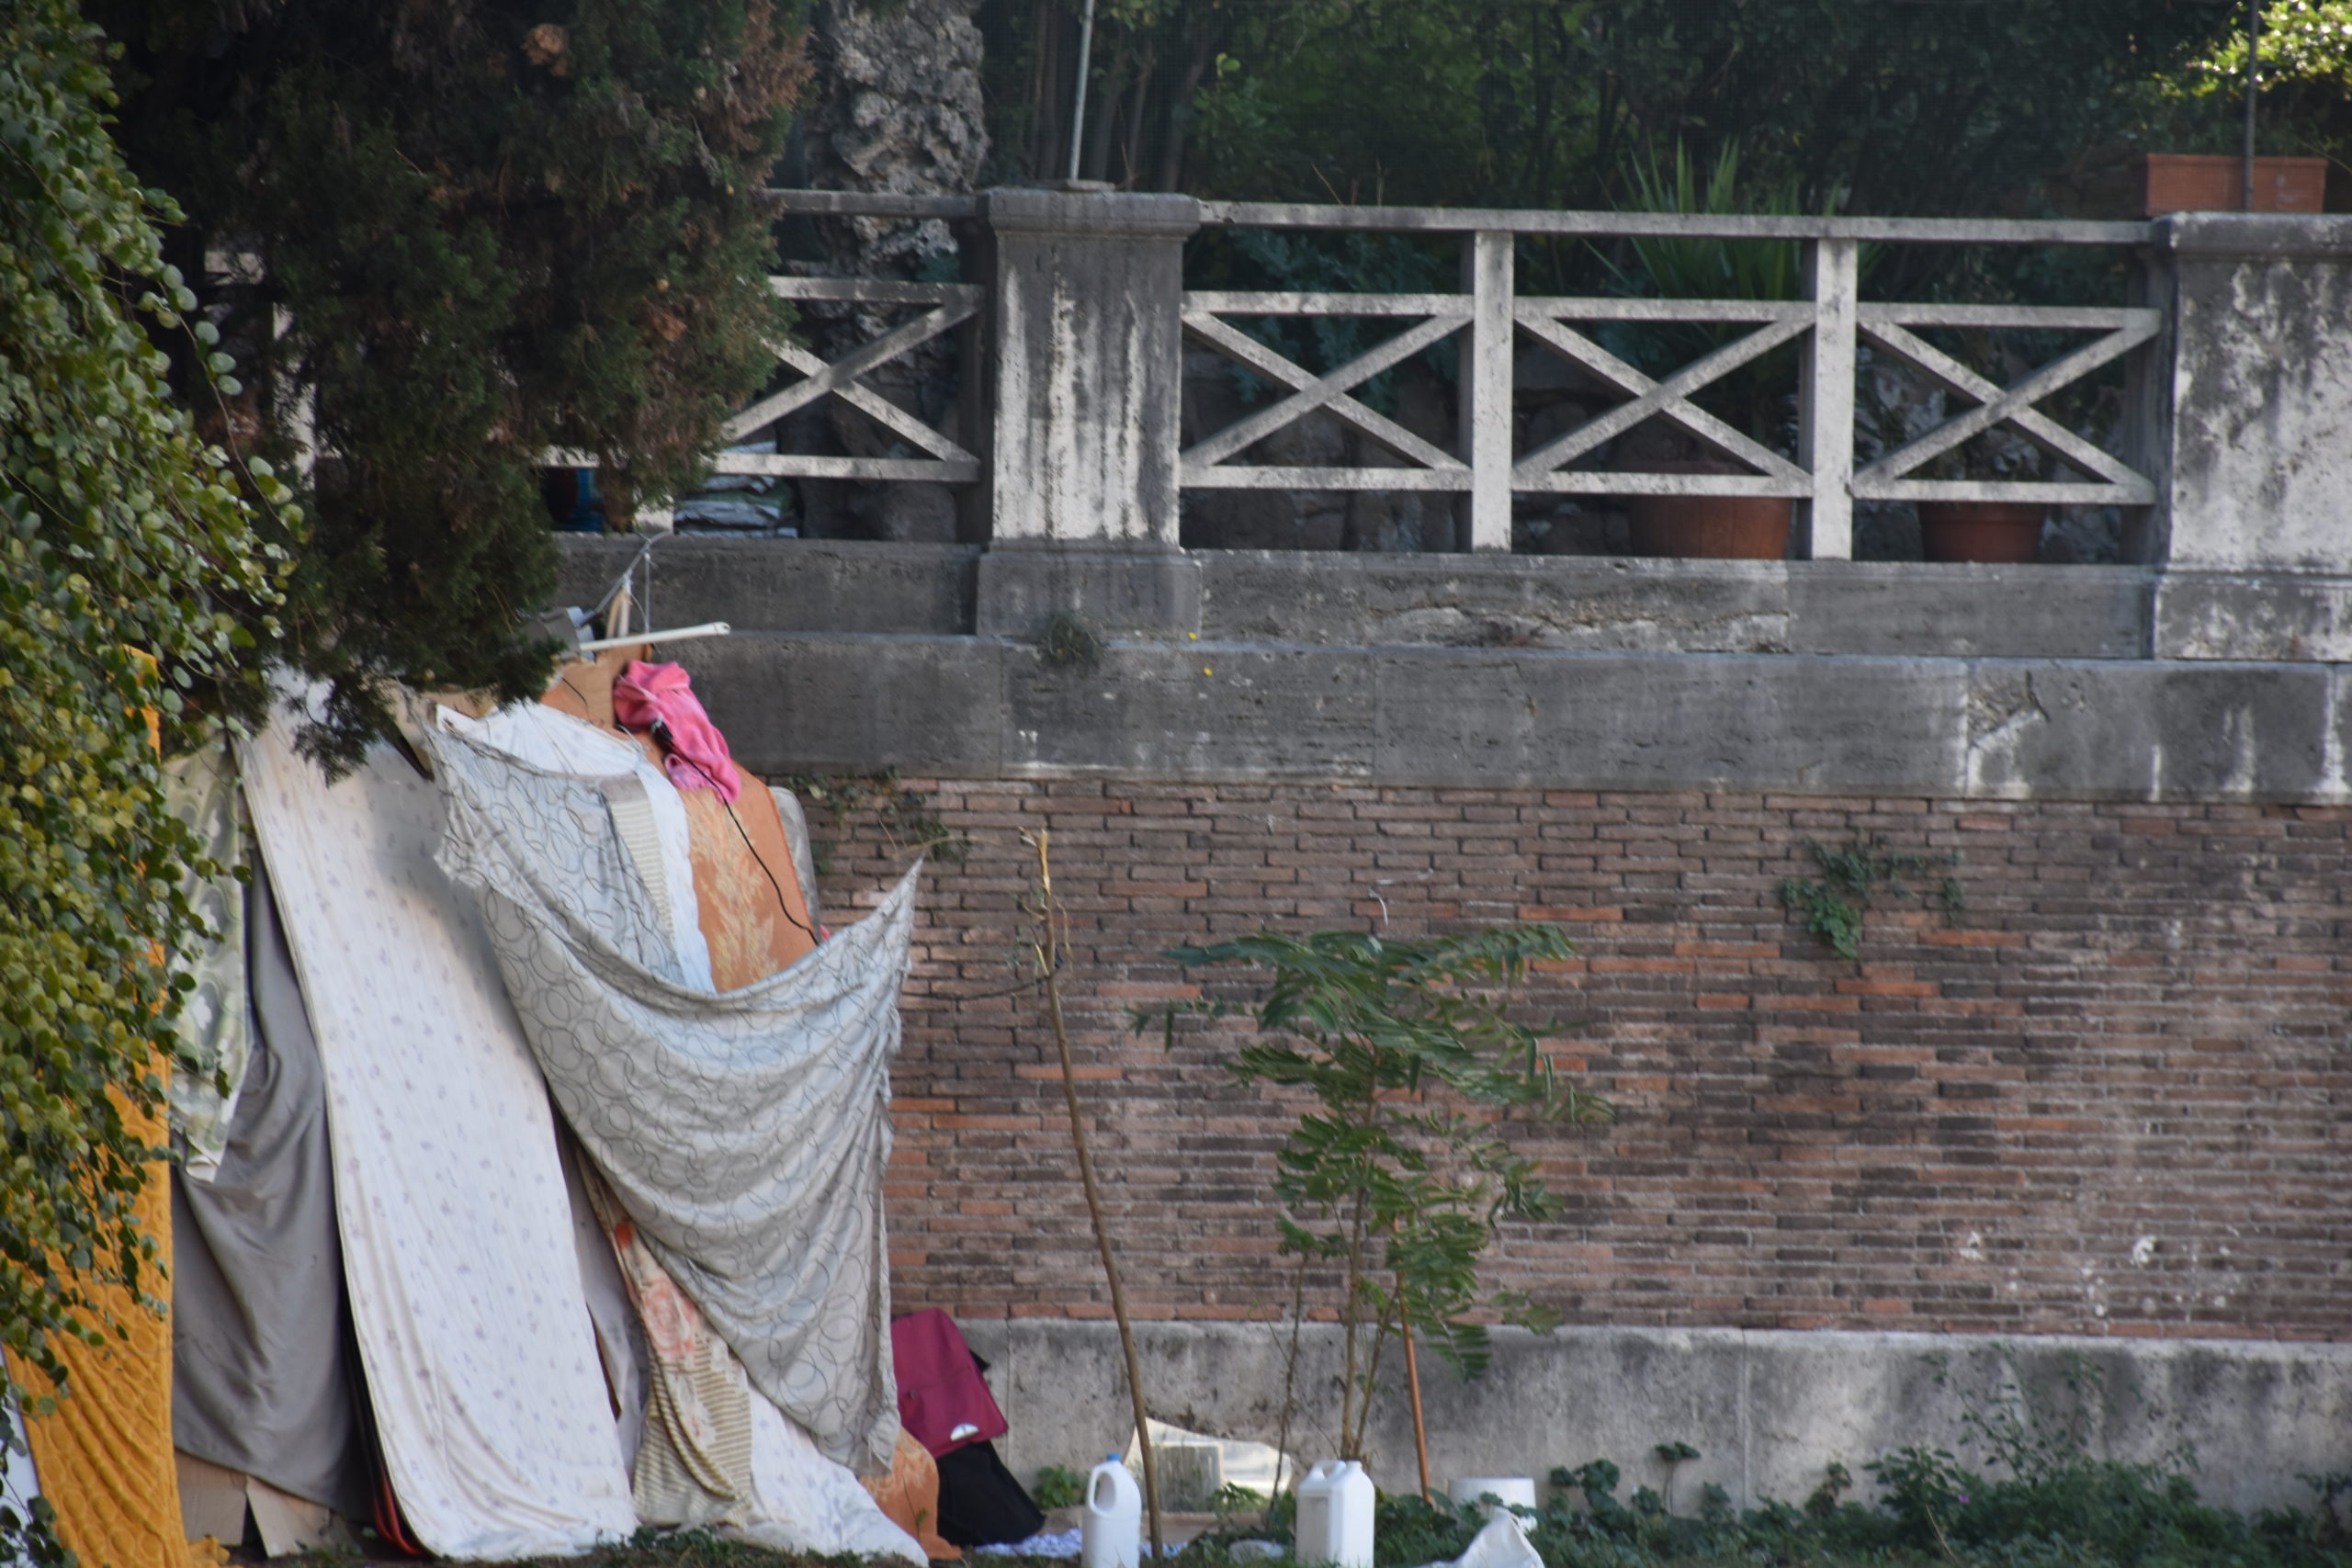 Nella zona di Castro Pretorio alcuni homeless si rifugiano in tende di fortuna